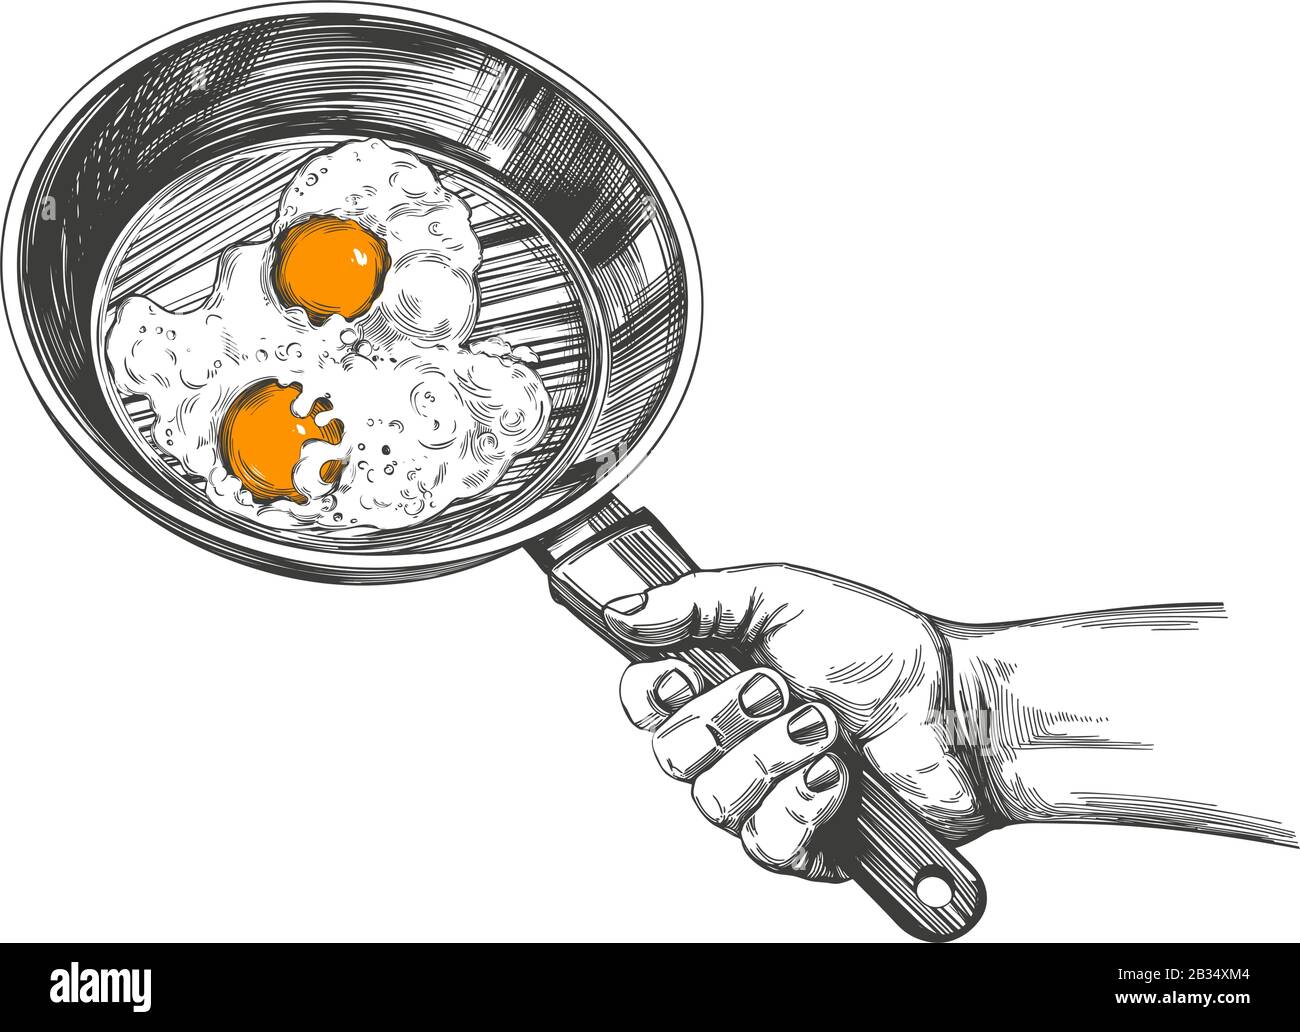 Spiegeleier werden in einer Pfanne in der Hand gekocht, gekocht, Küche,  handgezeichnete Vektorgrafik realistische Skizze Stock-Vektorgrafik - Alamy